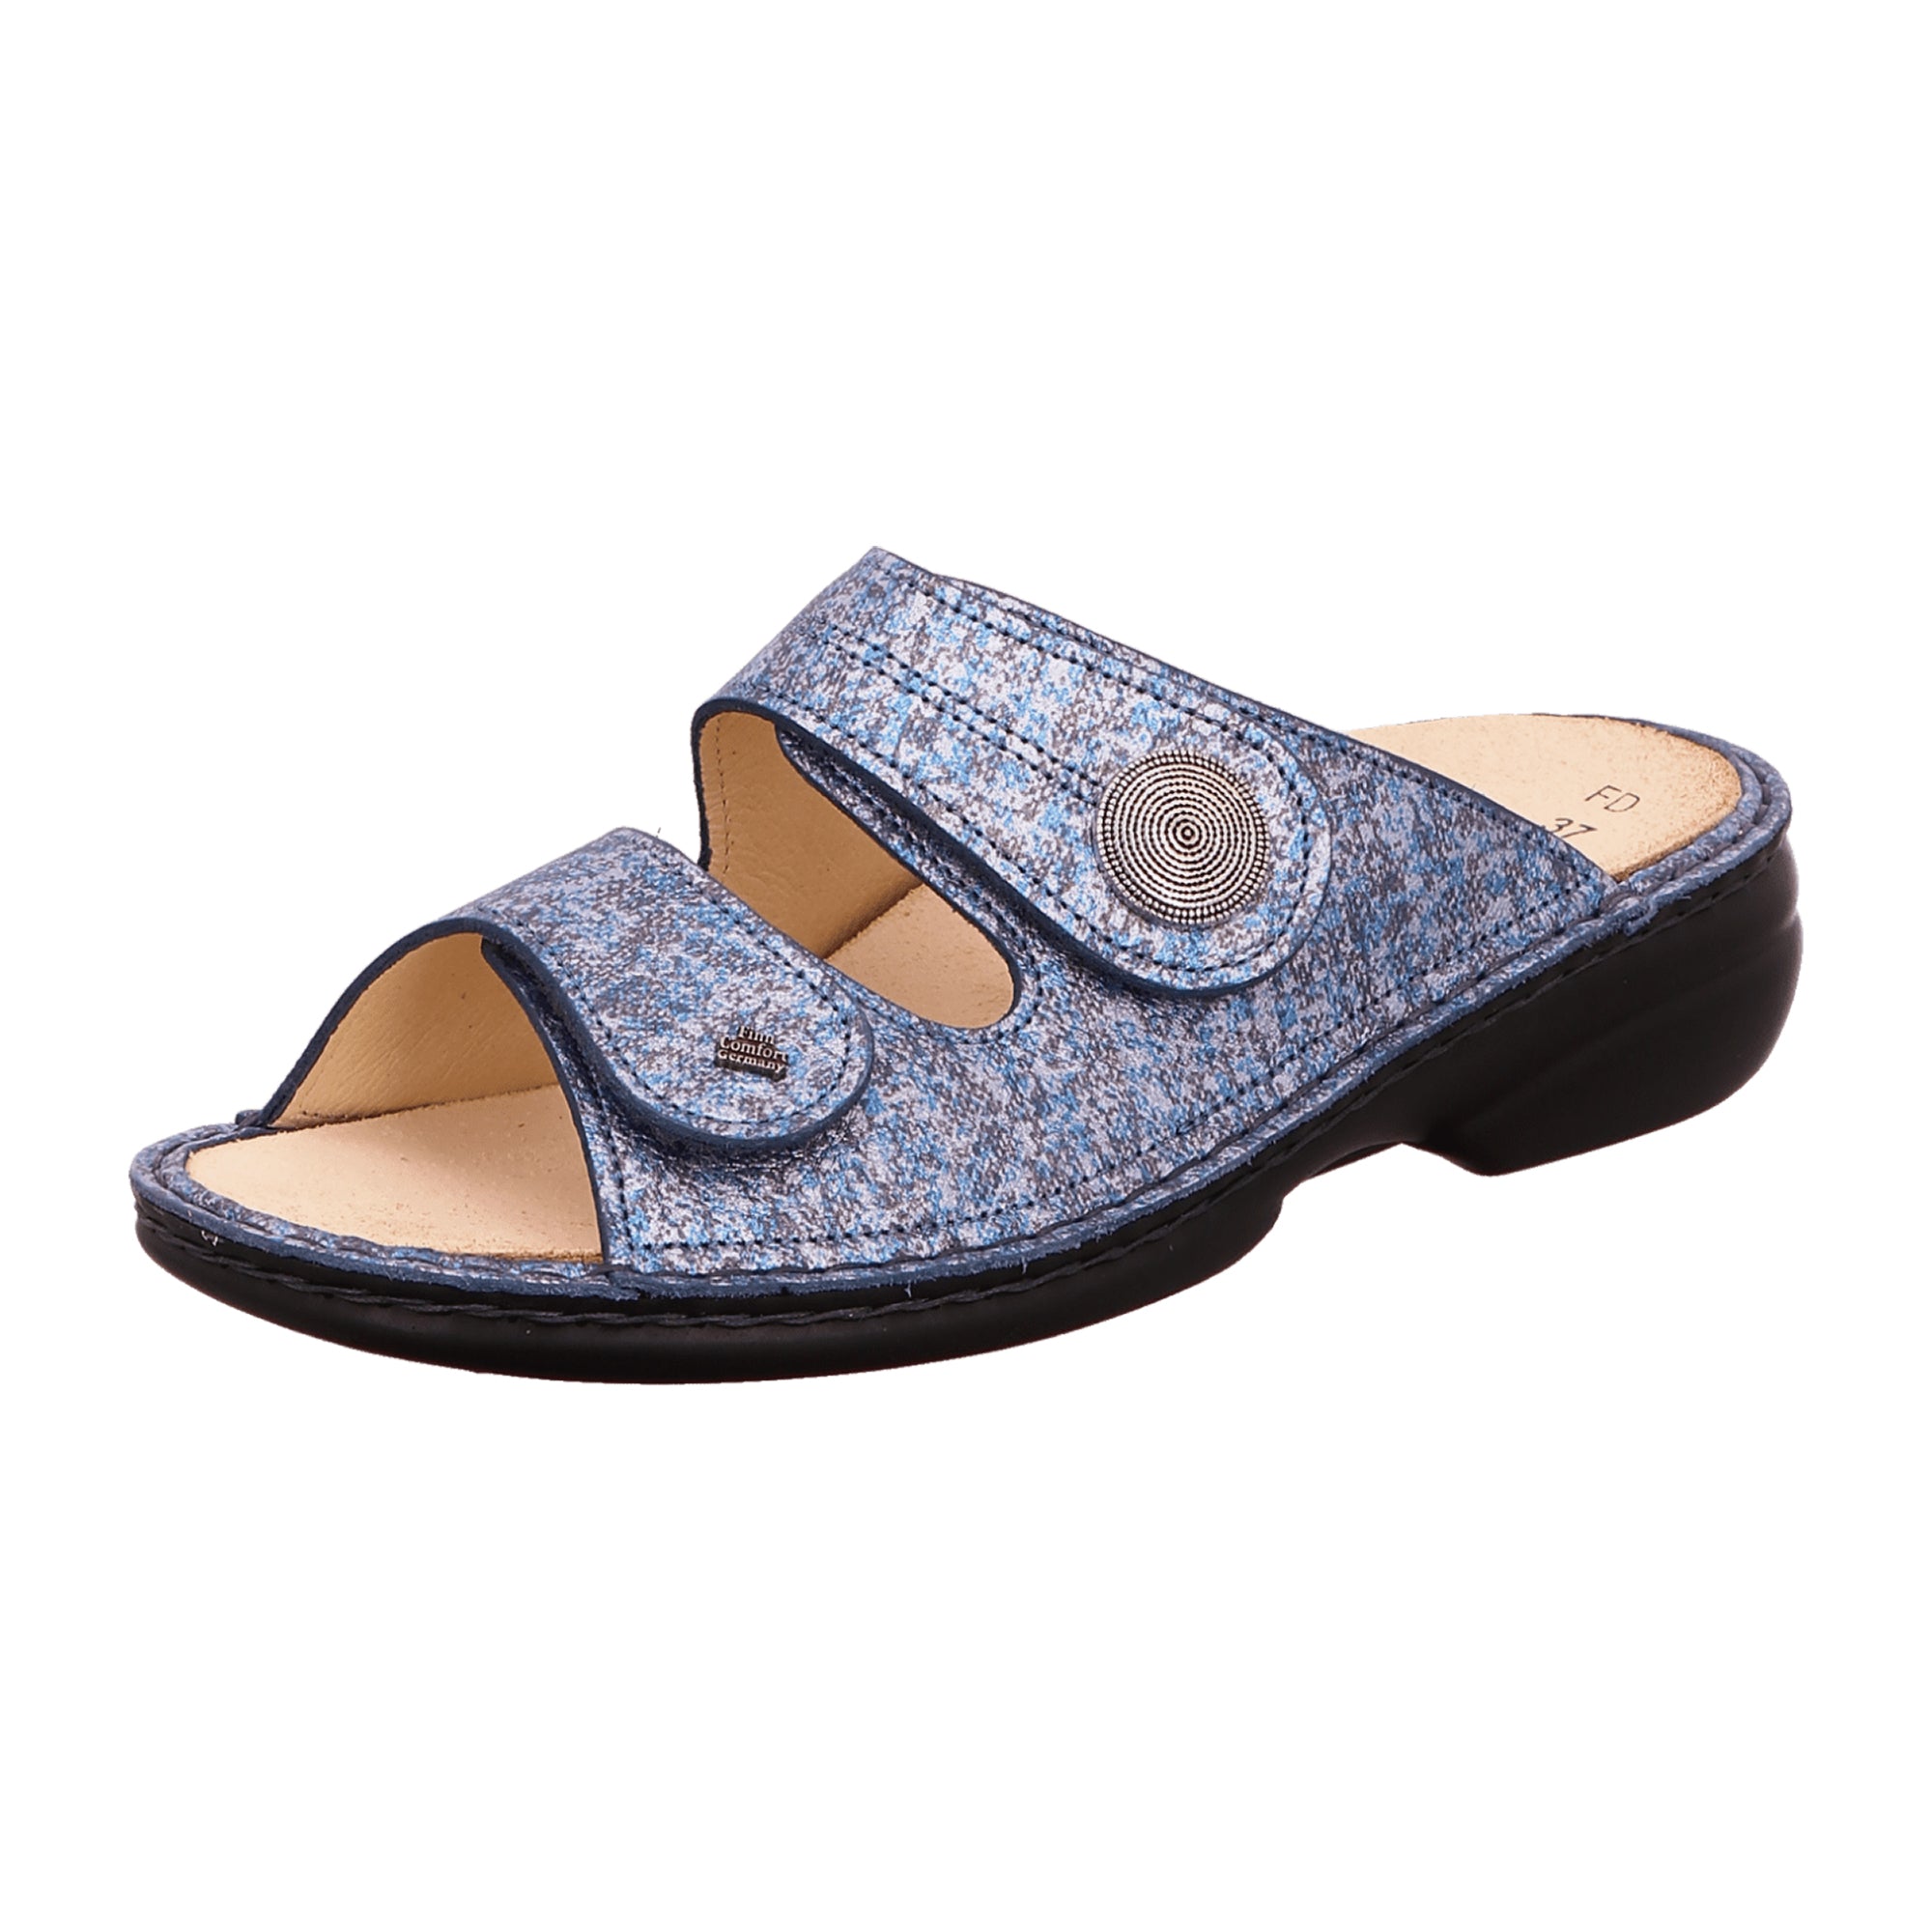 Finn Comfort Sansibar Women's Slides - Blue Leather Comfort Sandals with Adjustable Straps